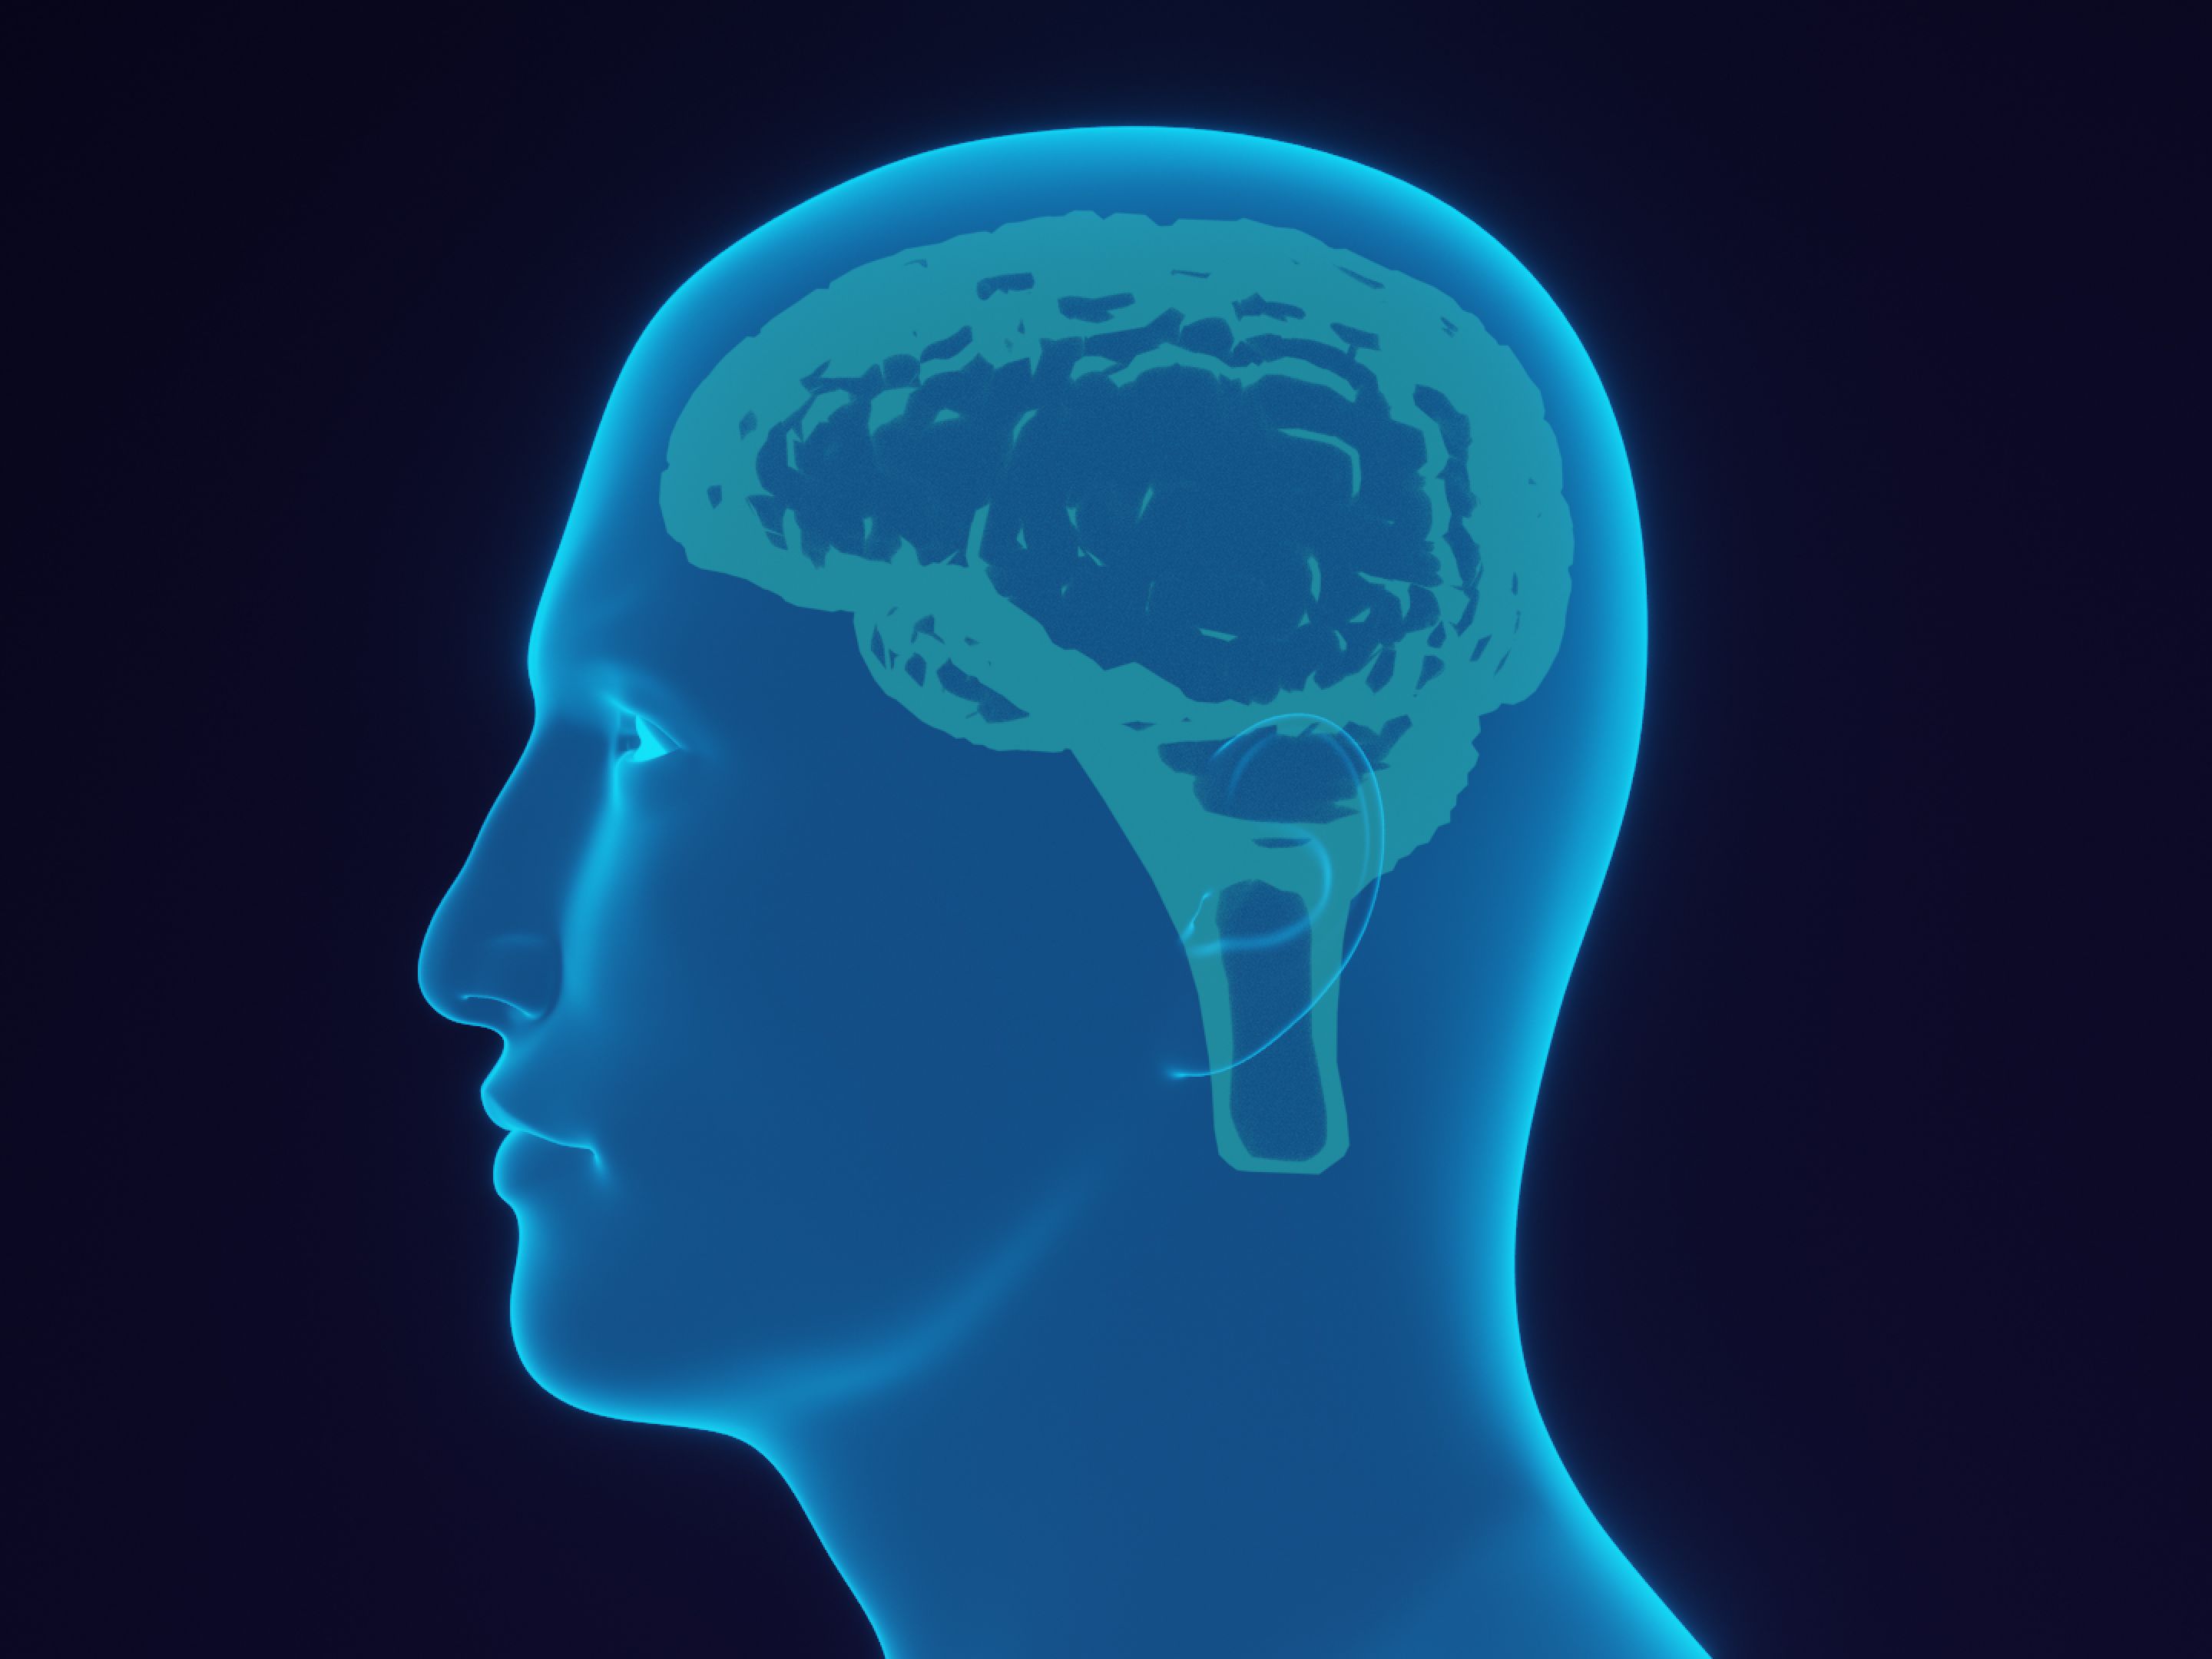 Röntgenähnliche Darstellung eines menschlichen Kopfprofils mit hervorgehobener Gehirnstruktur in blauer Leuchtfarbe, was auf die kognitive und strategische Planung hinweist, die auch im günstigsten Preis-Paket enthalten ist.